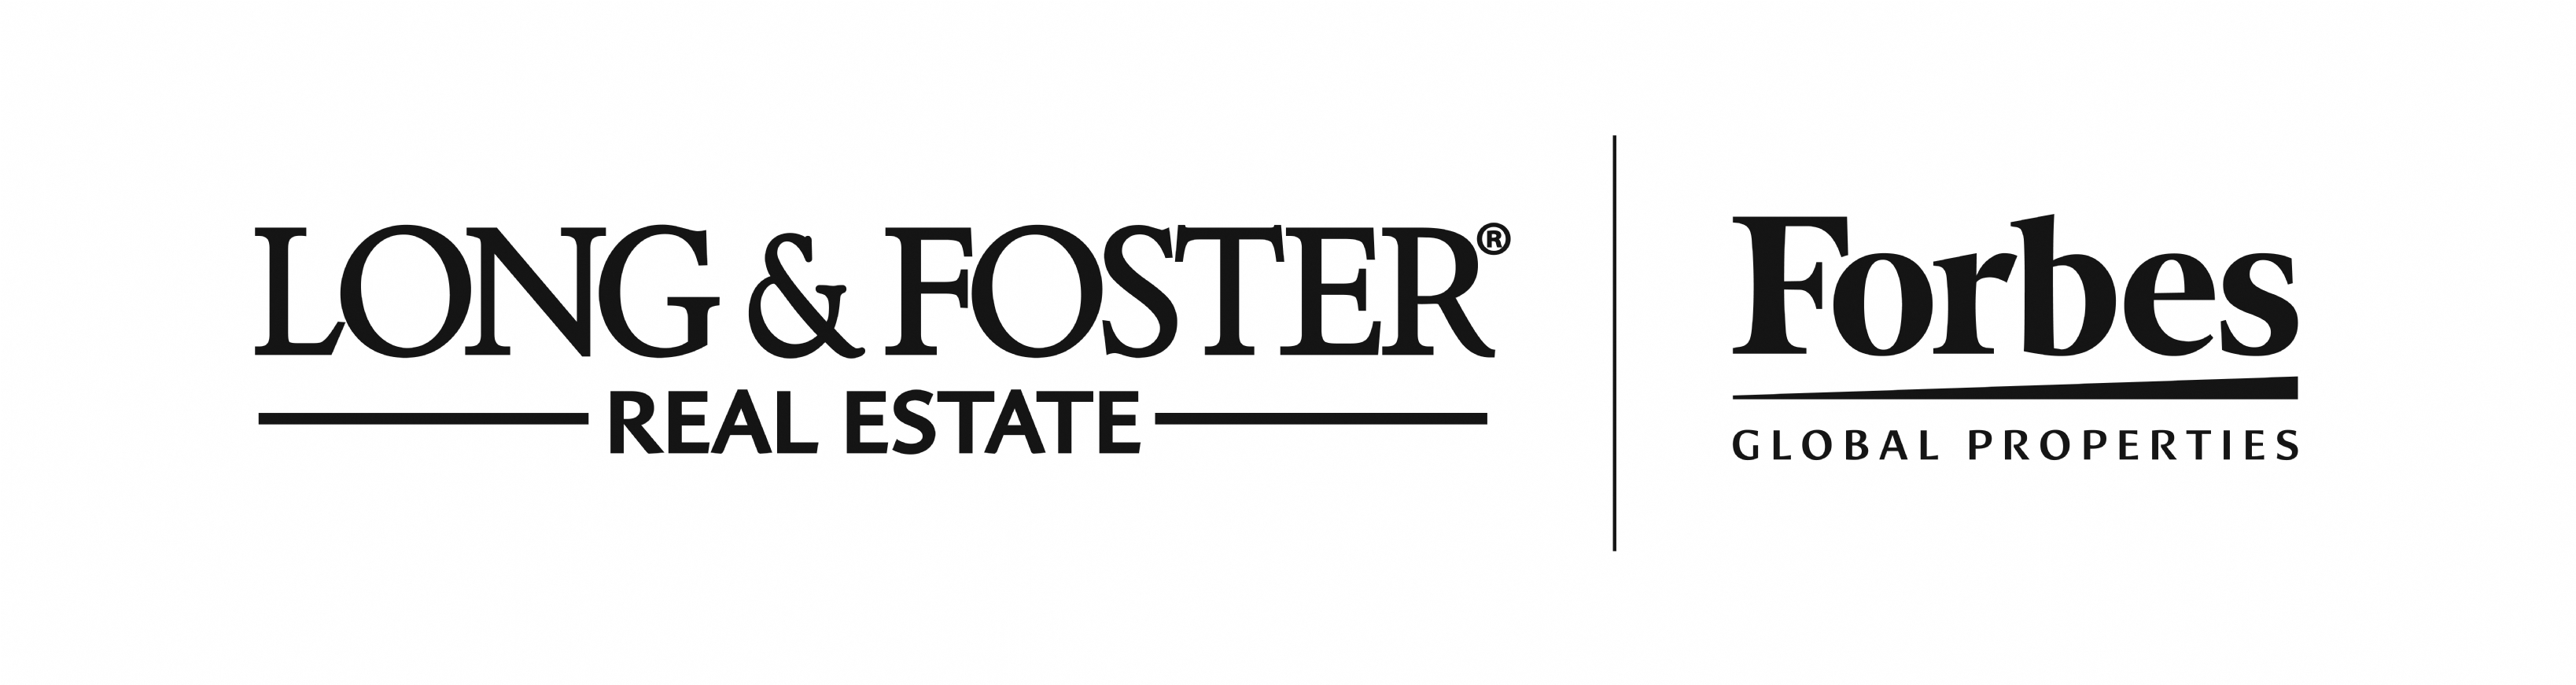 long & foster realtors - Logo